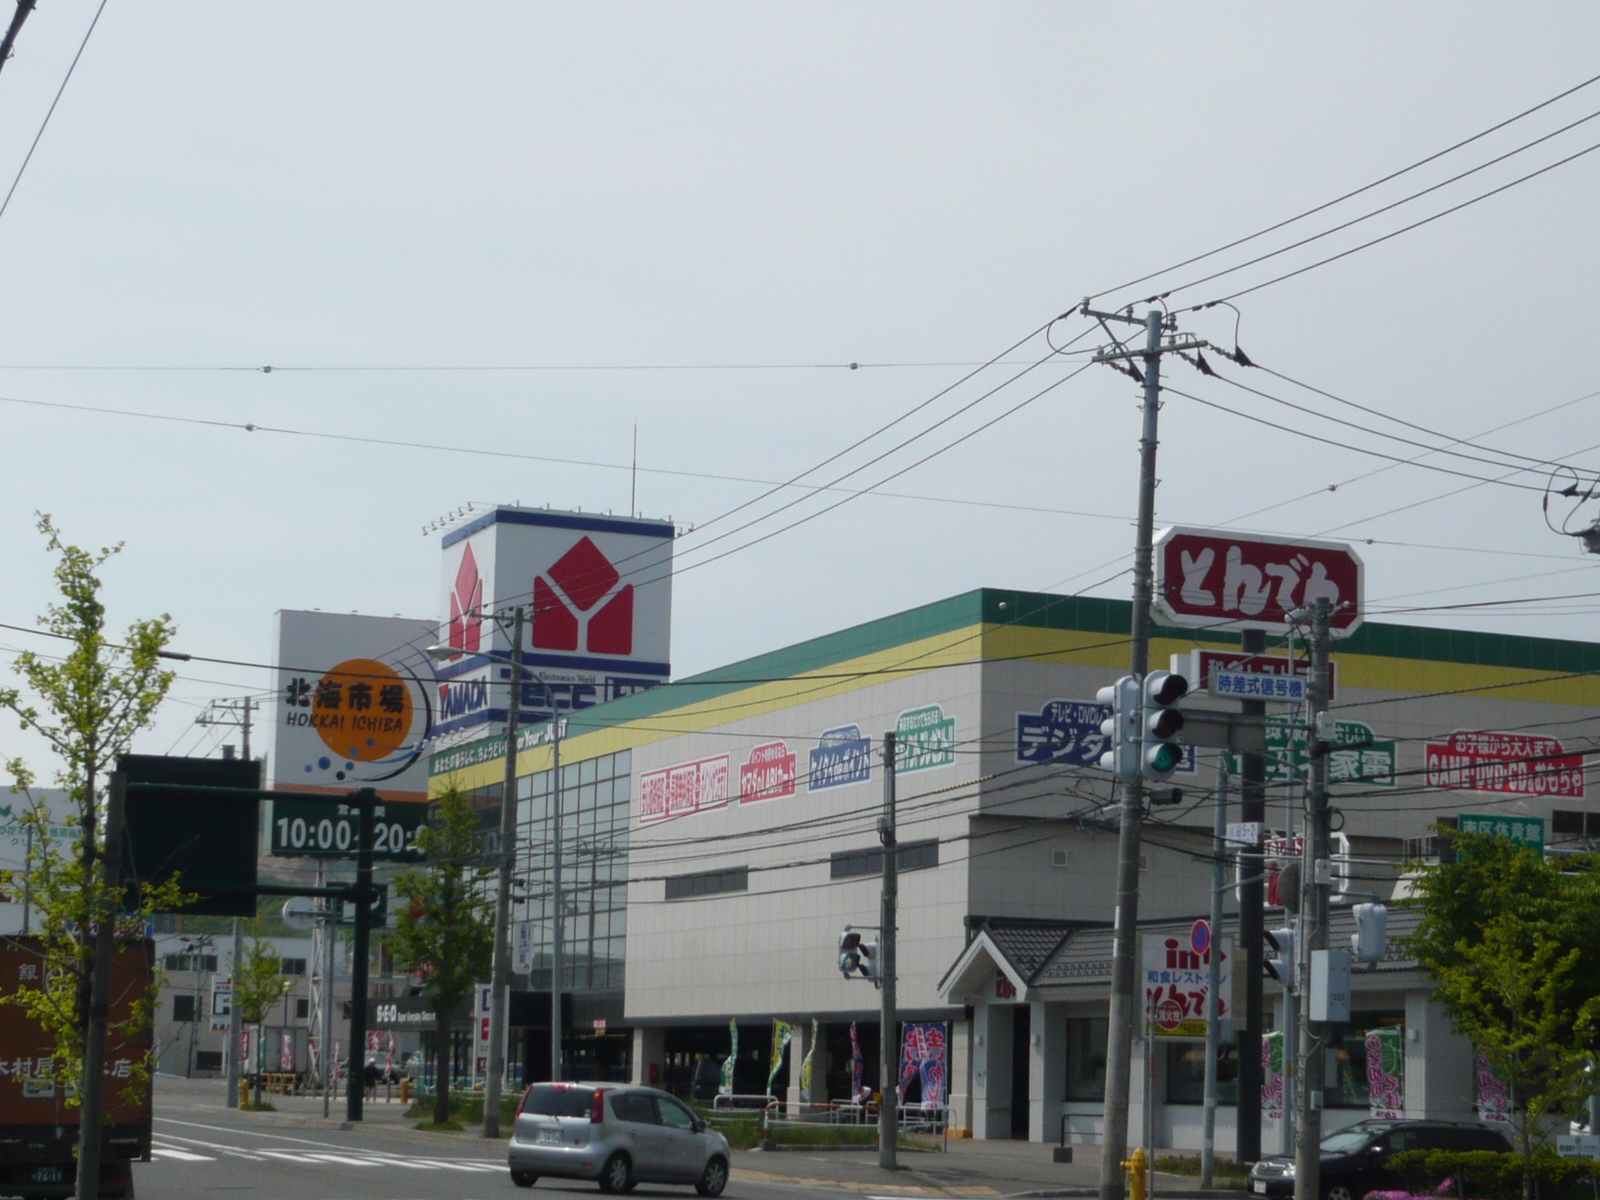 Shopping centre. Yamada Denki to (shopping center) 2000m